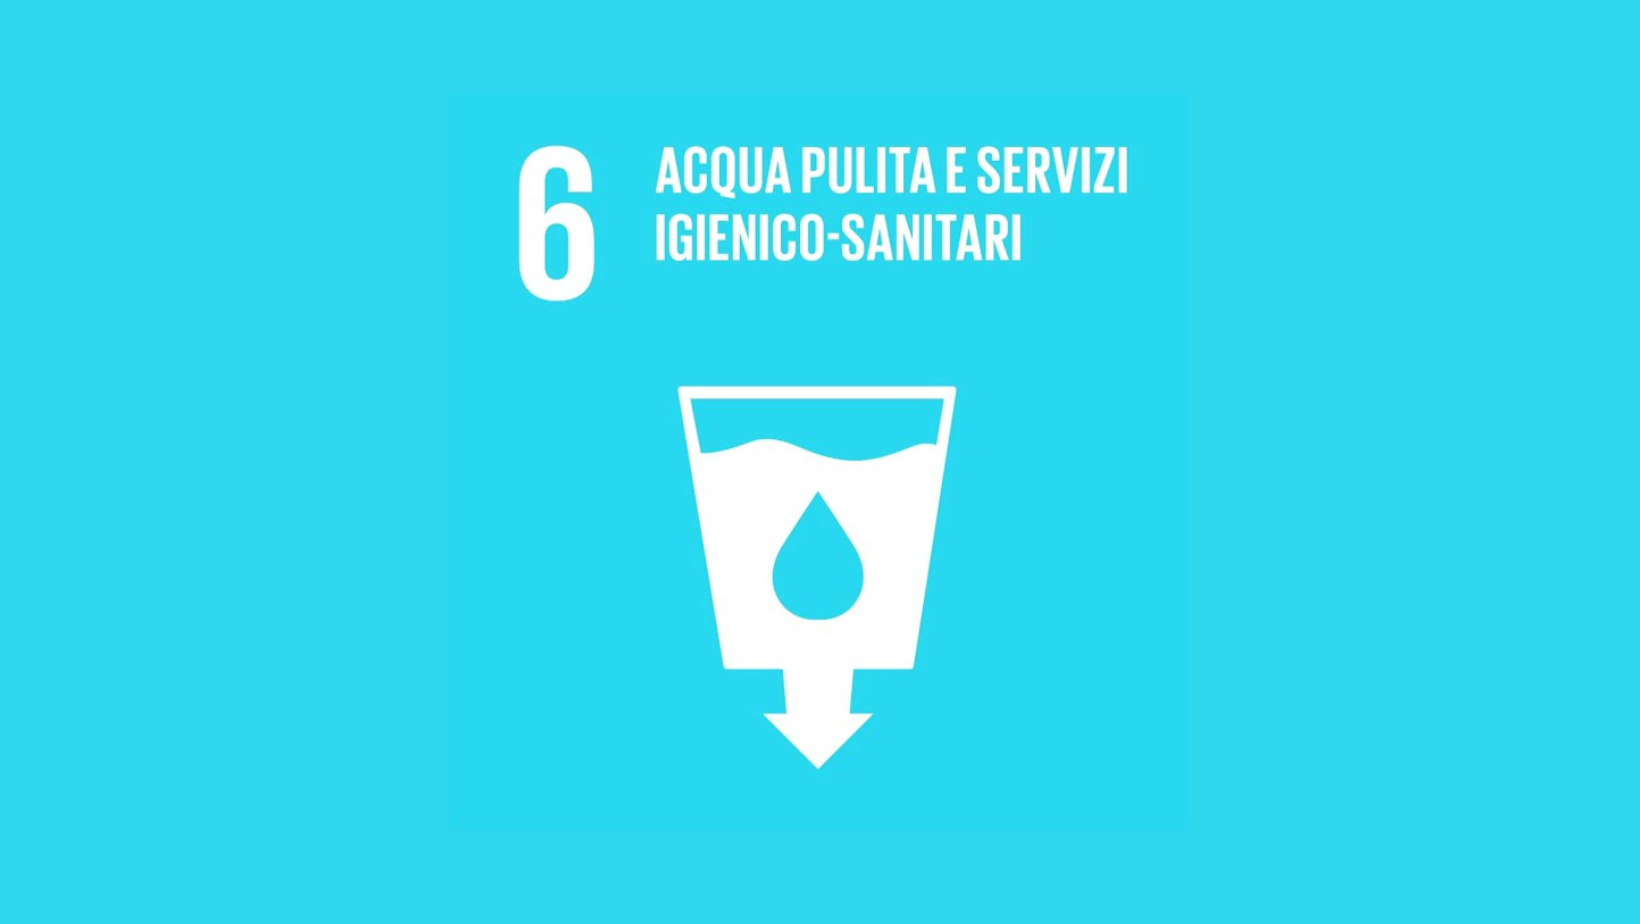 Obiettivo 6: Acqua pulita